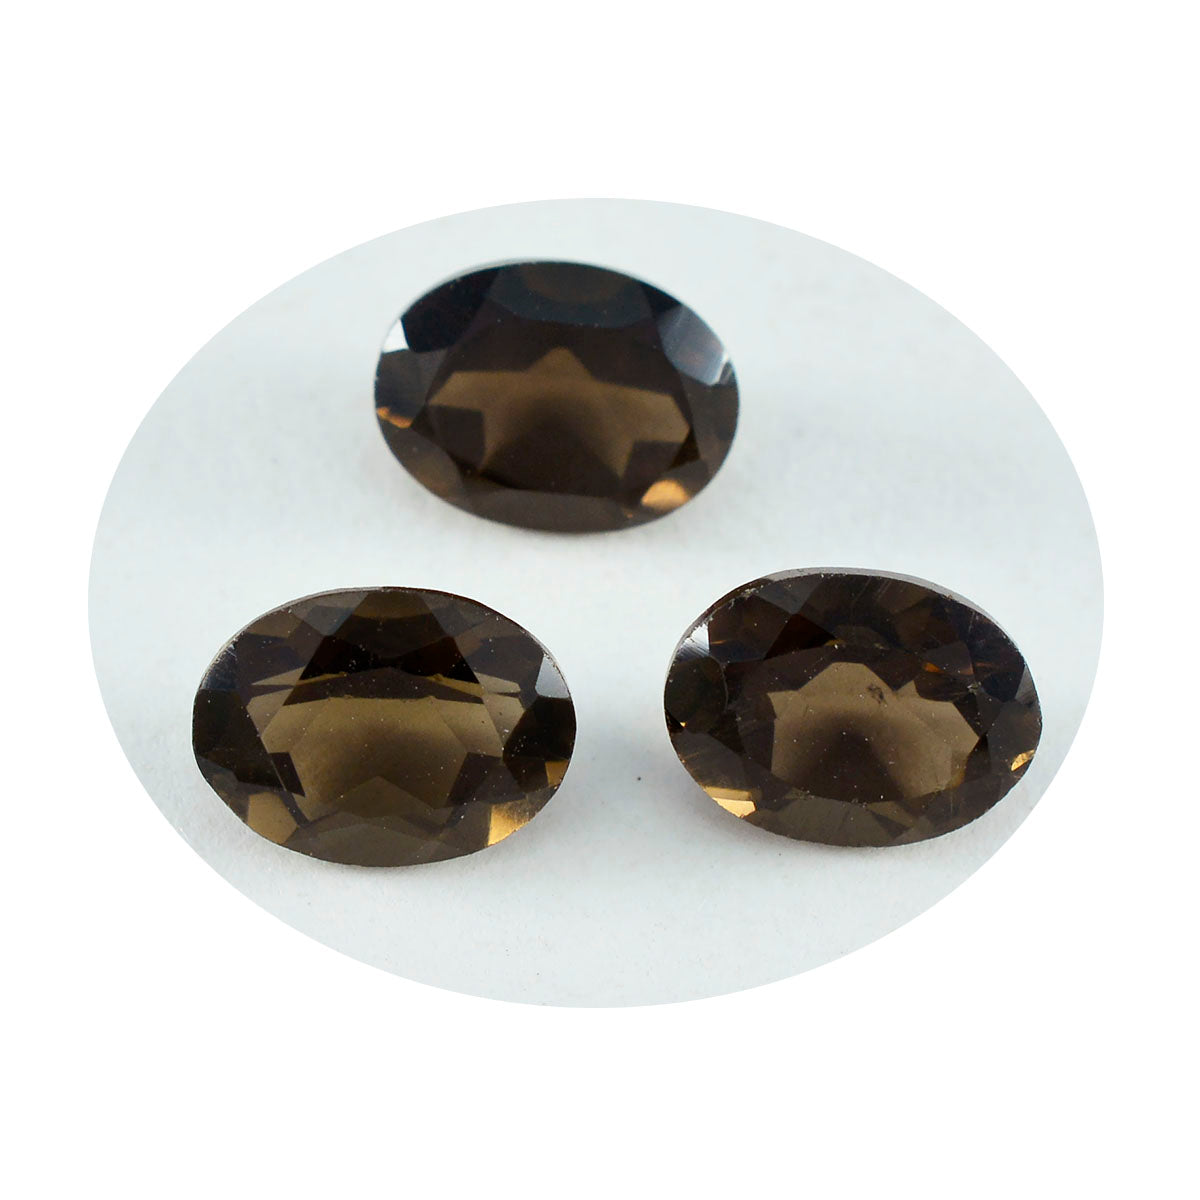 riyogems 1 шт. натуральный коричневый дымчатый кварц ограненный 7x9 мм овальной формы прекрасный качественный свободный драгоценный камень